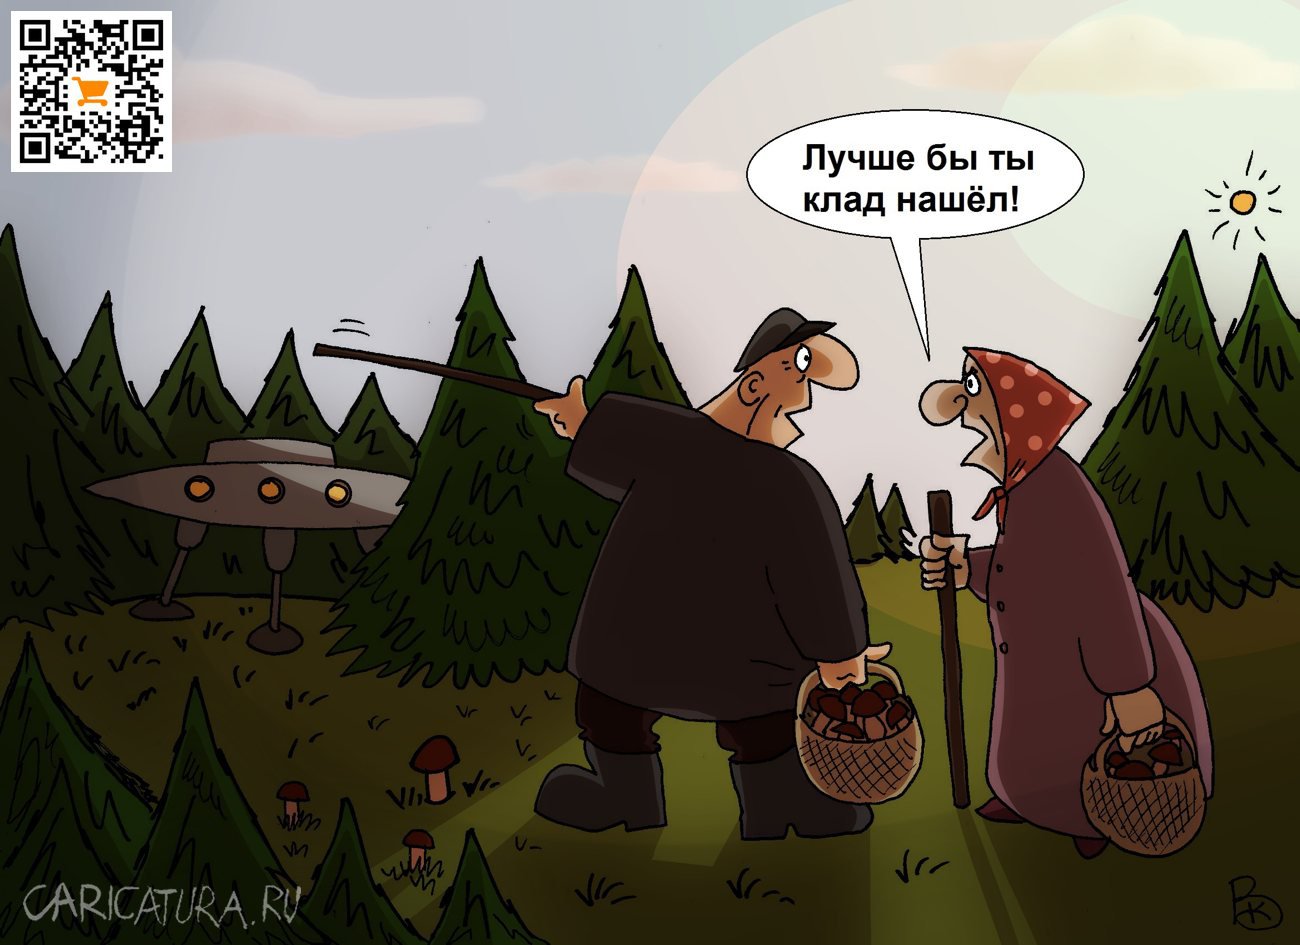 Карикатура "Нашел", Валерий Каненков